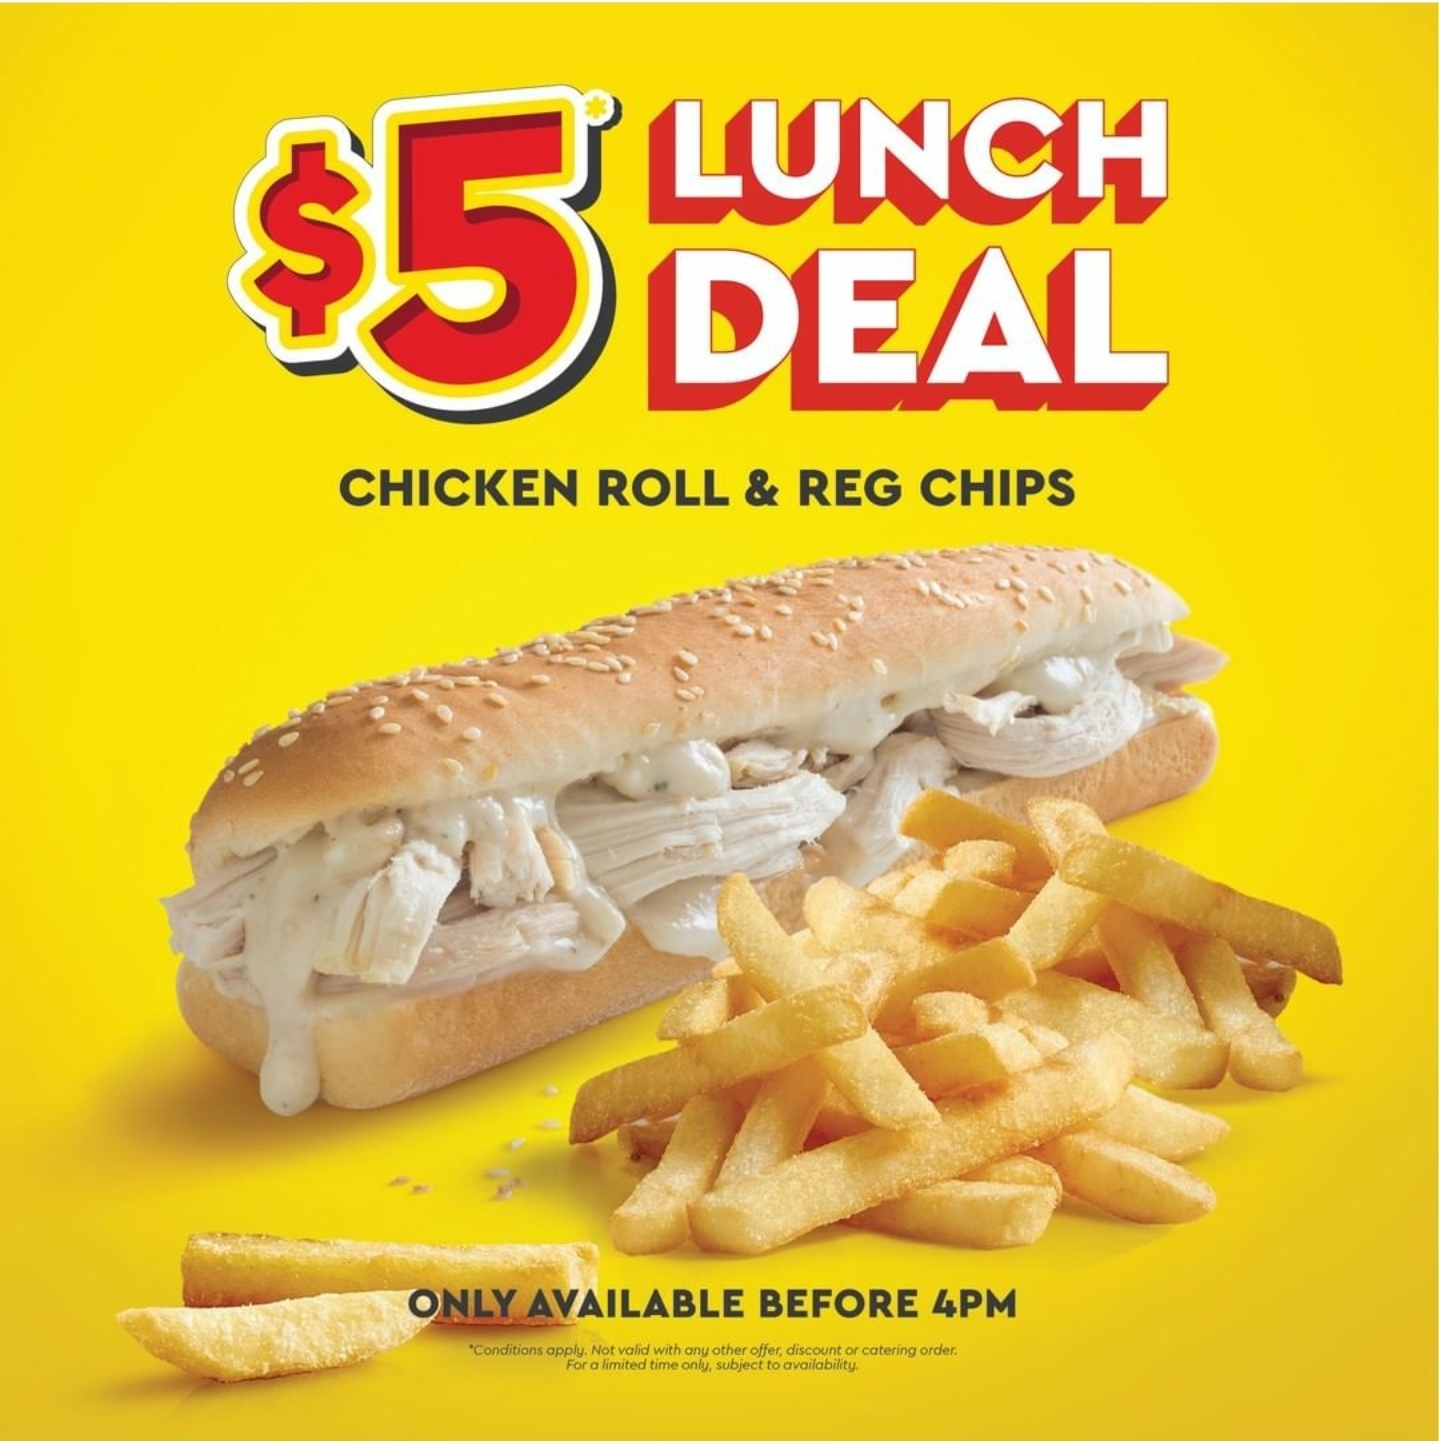 DEAL: Chicken Treat - $5 Chicken Roll & Regular Chips until 4pm 3